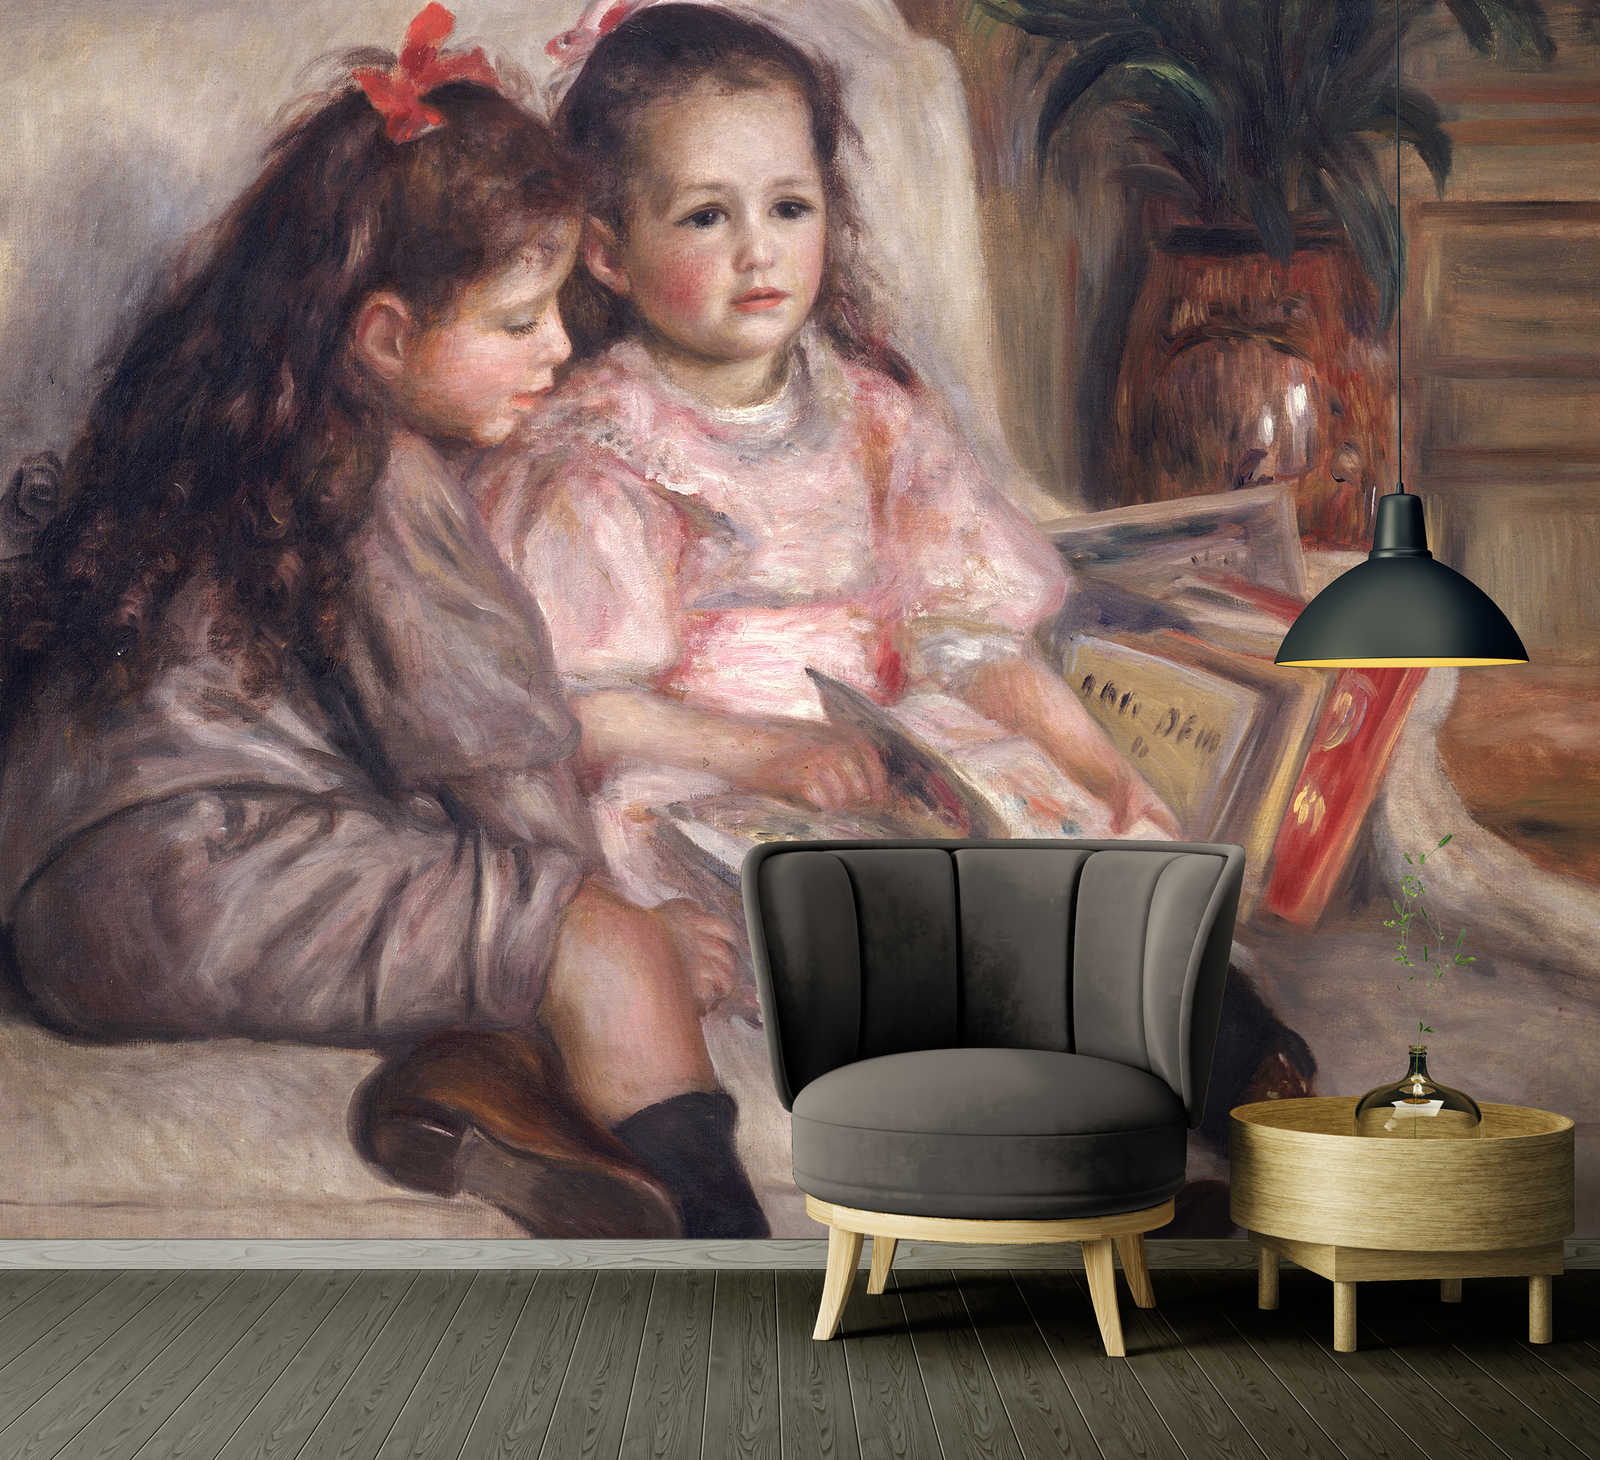             Fotomurali "Ritratti di bambini" di Pierre Auguste Renoir
        